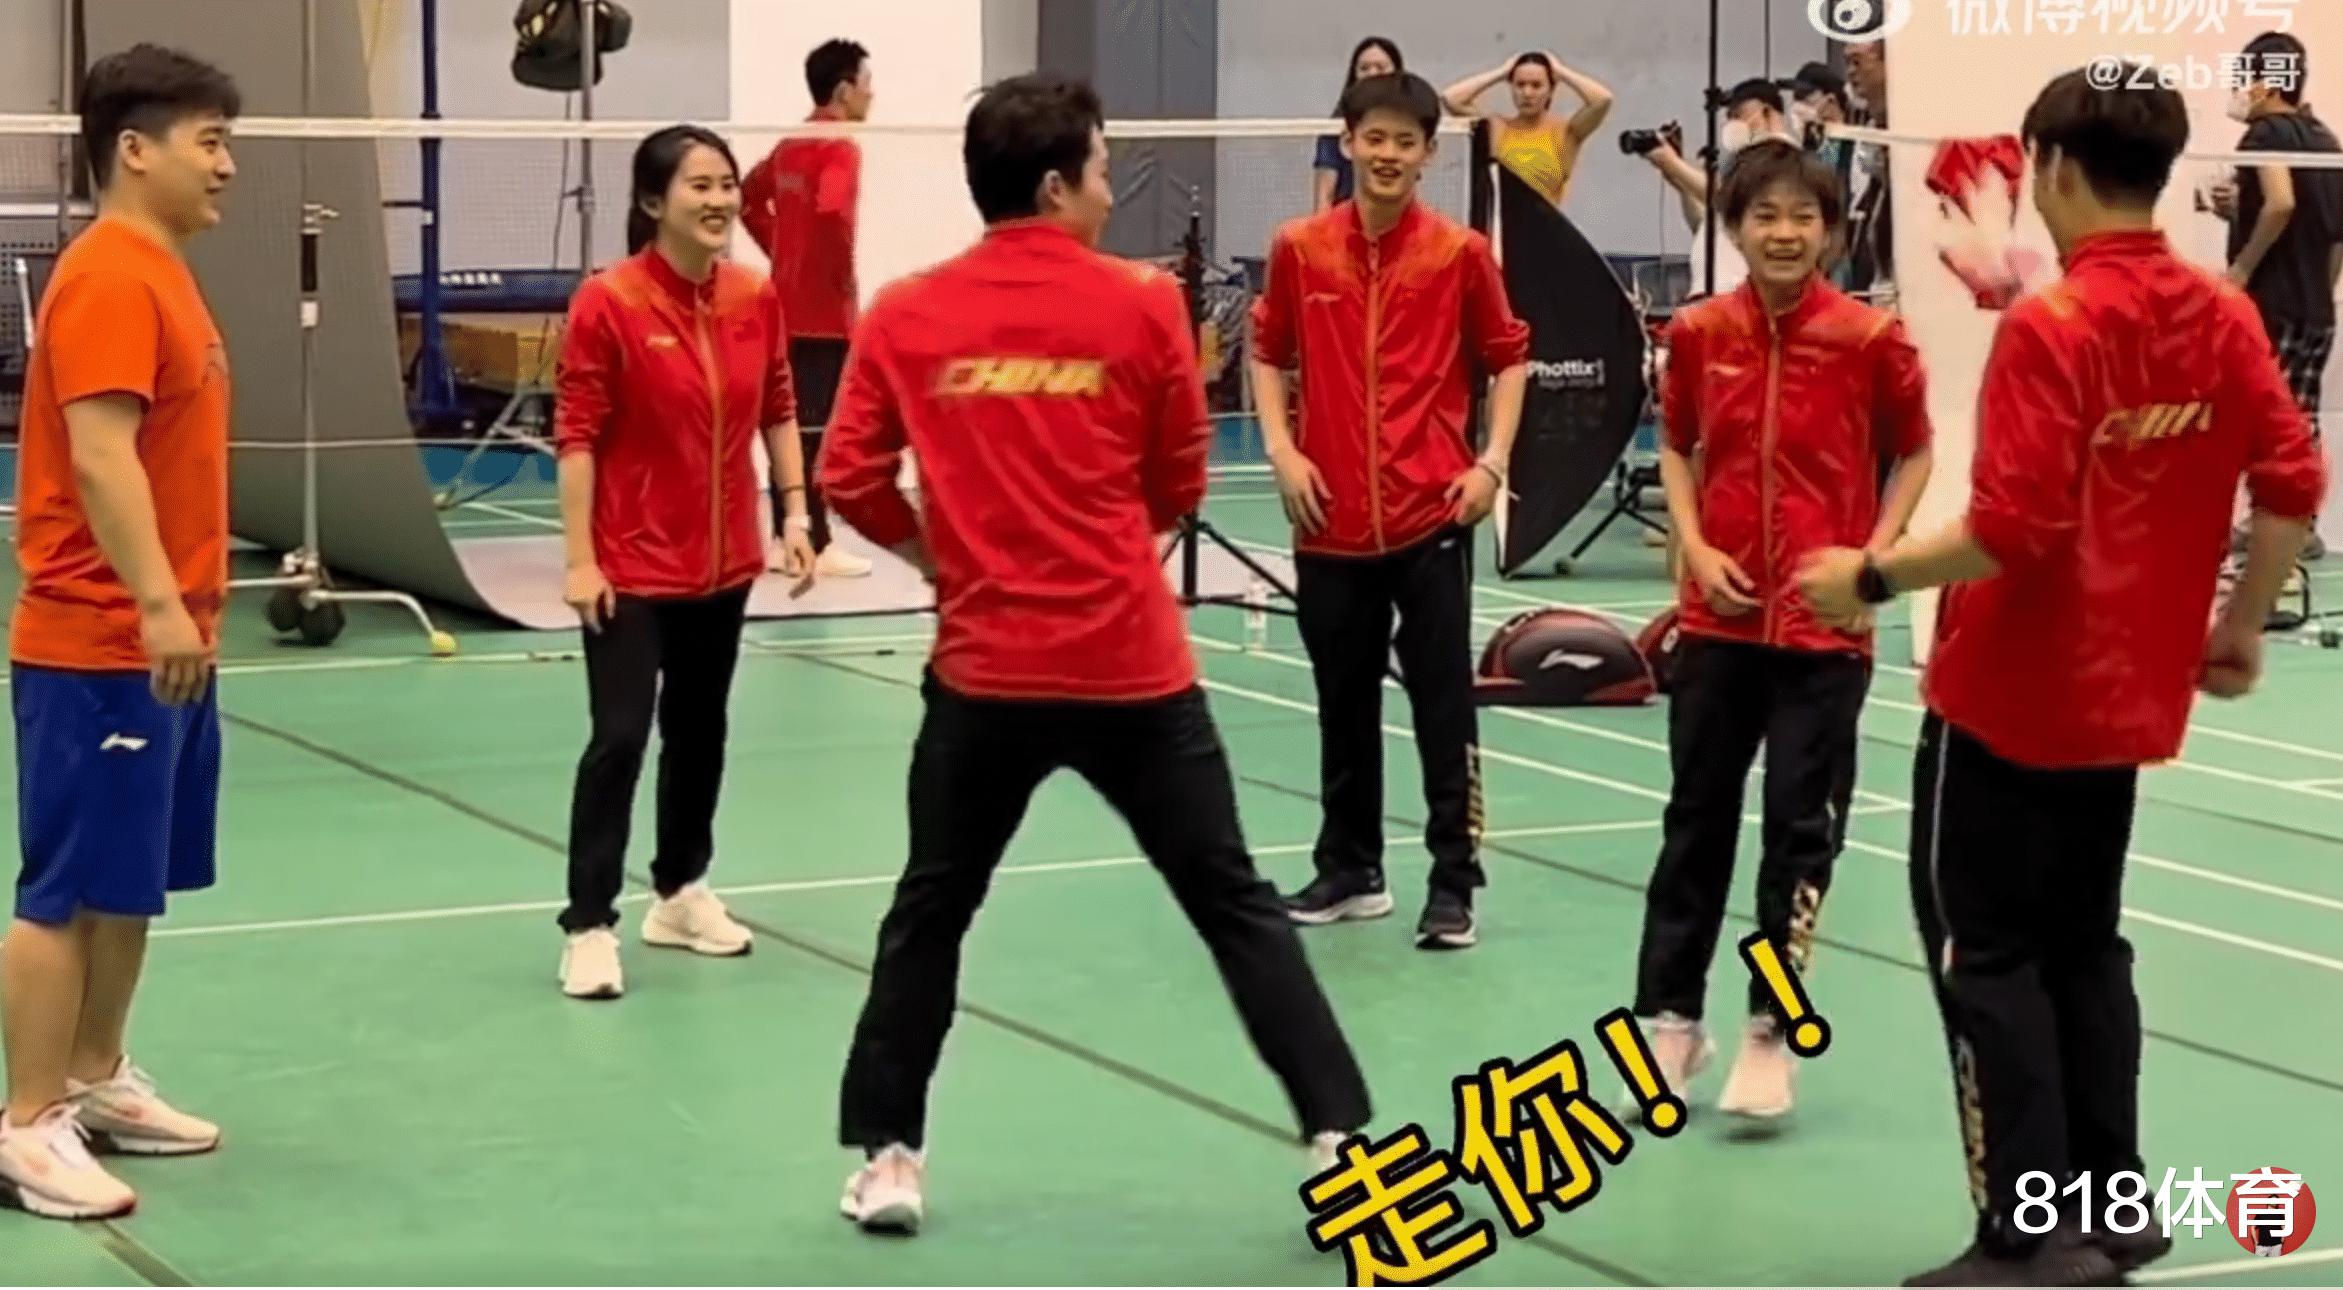 可爱! 陈若琳带全红婵等队员踢毽球, 红姐没够到被打趣: 腿短了踢不到(8)